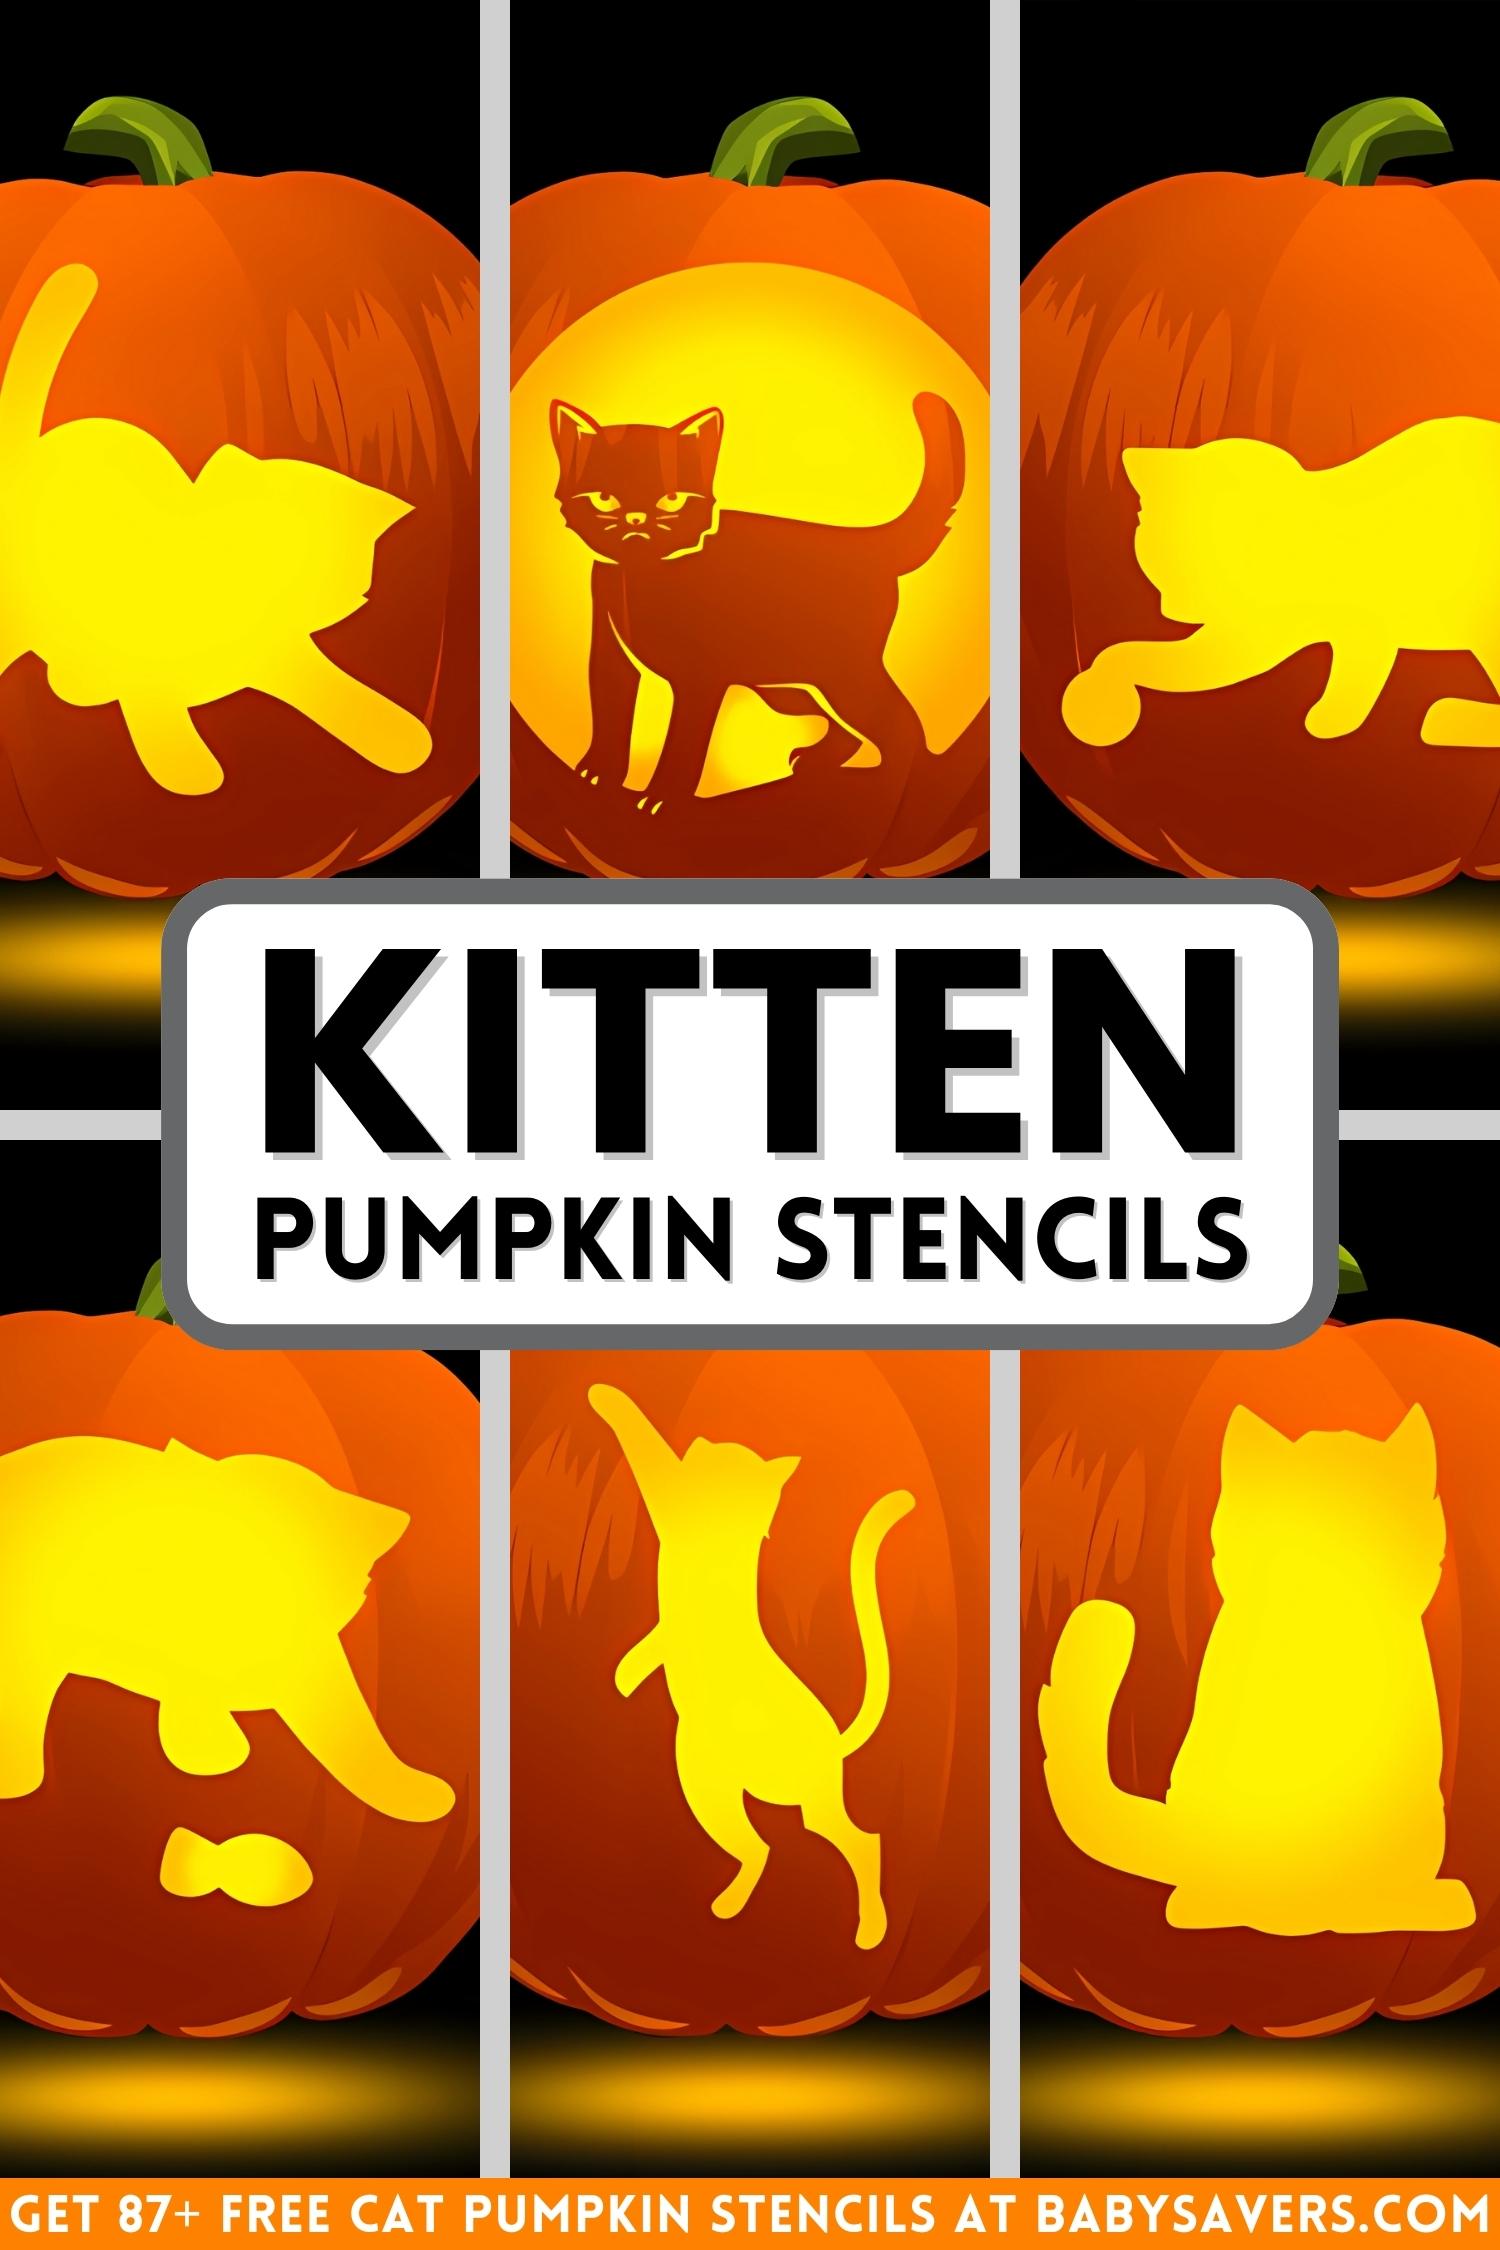 kitten and cat pumpkin carving stencils